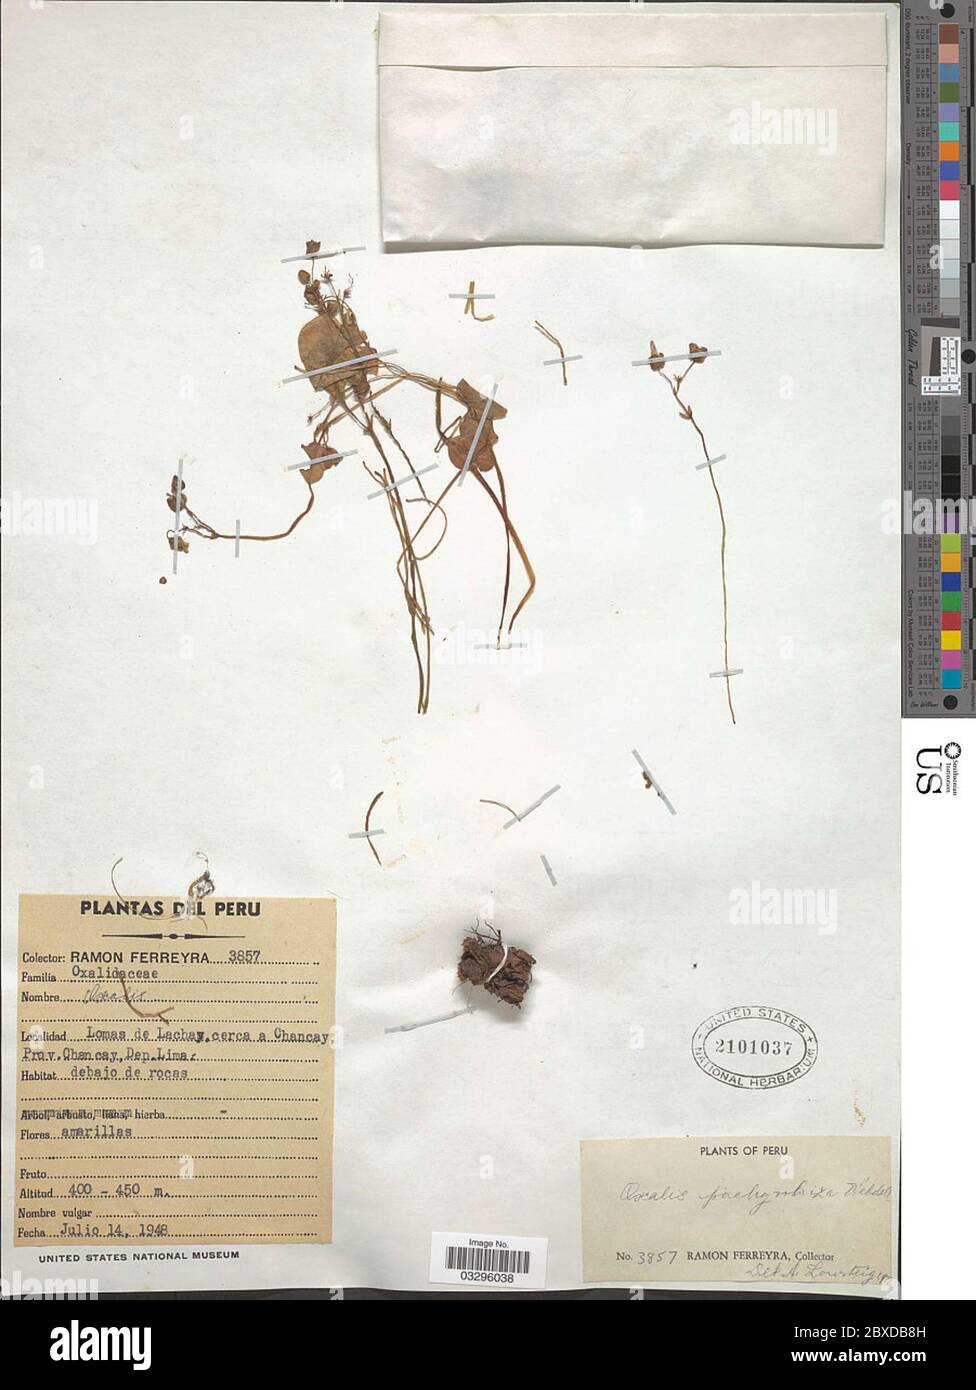 Oxalis pachyrrhiza Wedd Oxalis pachyrrhiza Wedd. Stock Photo